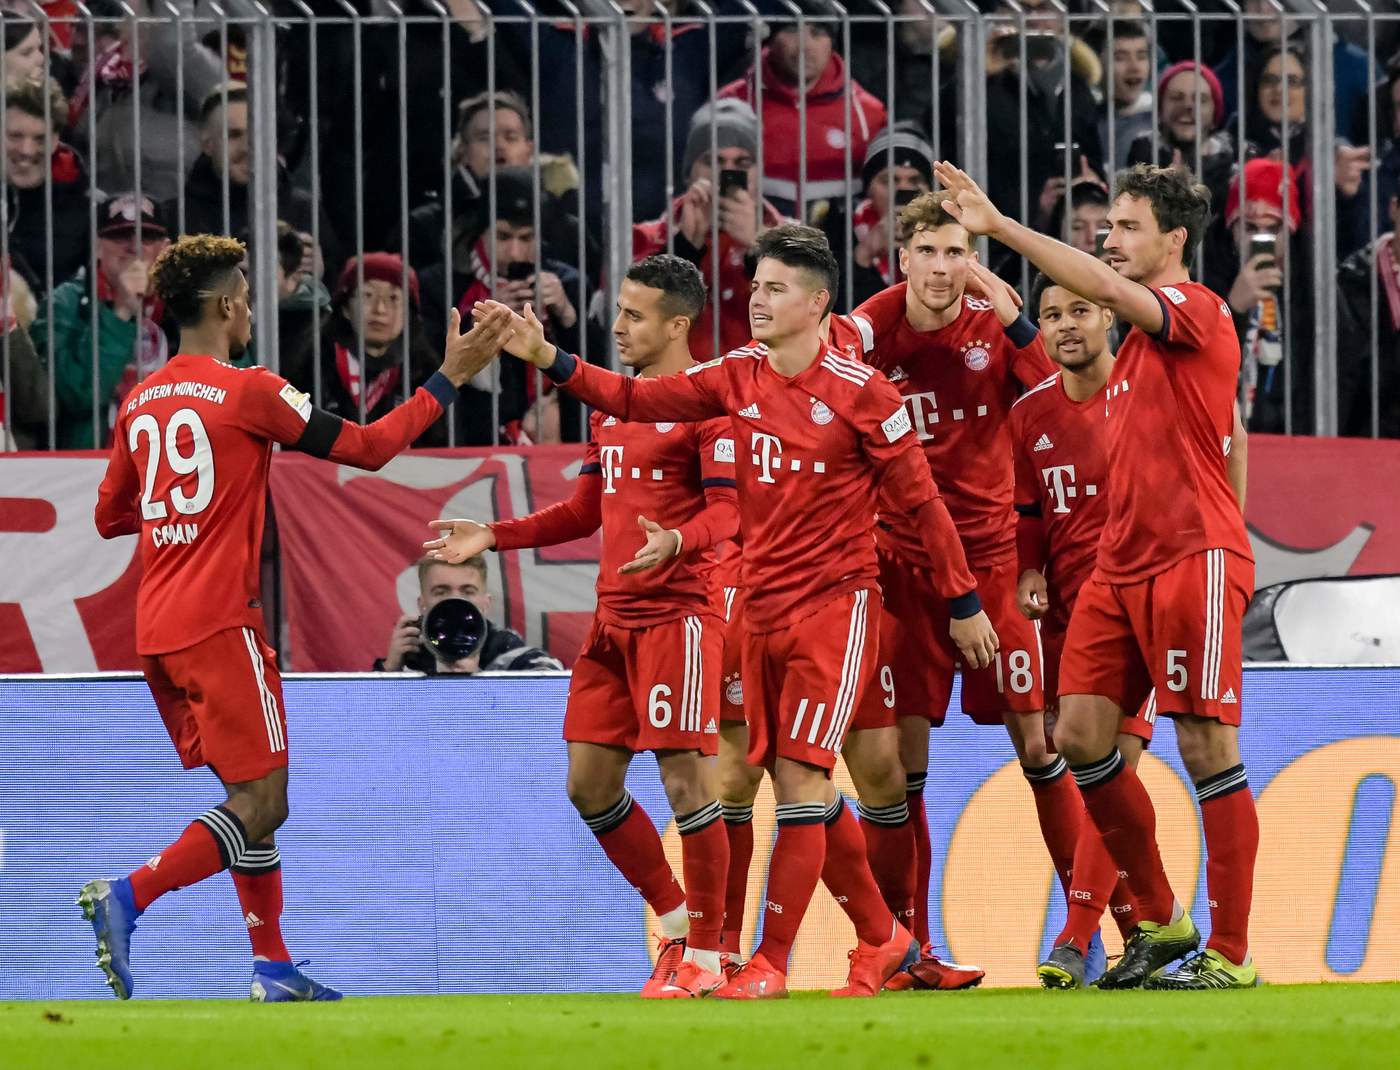 Bundesliga, Norimberga-Bayern 28 aprile: analisi e pronostico della giornata della massima divisione calcistica tedesca